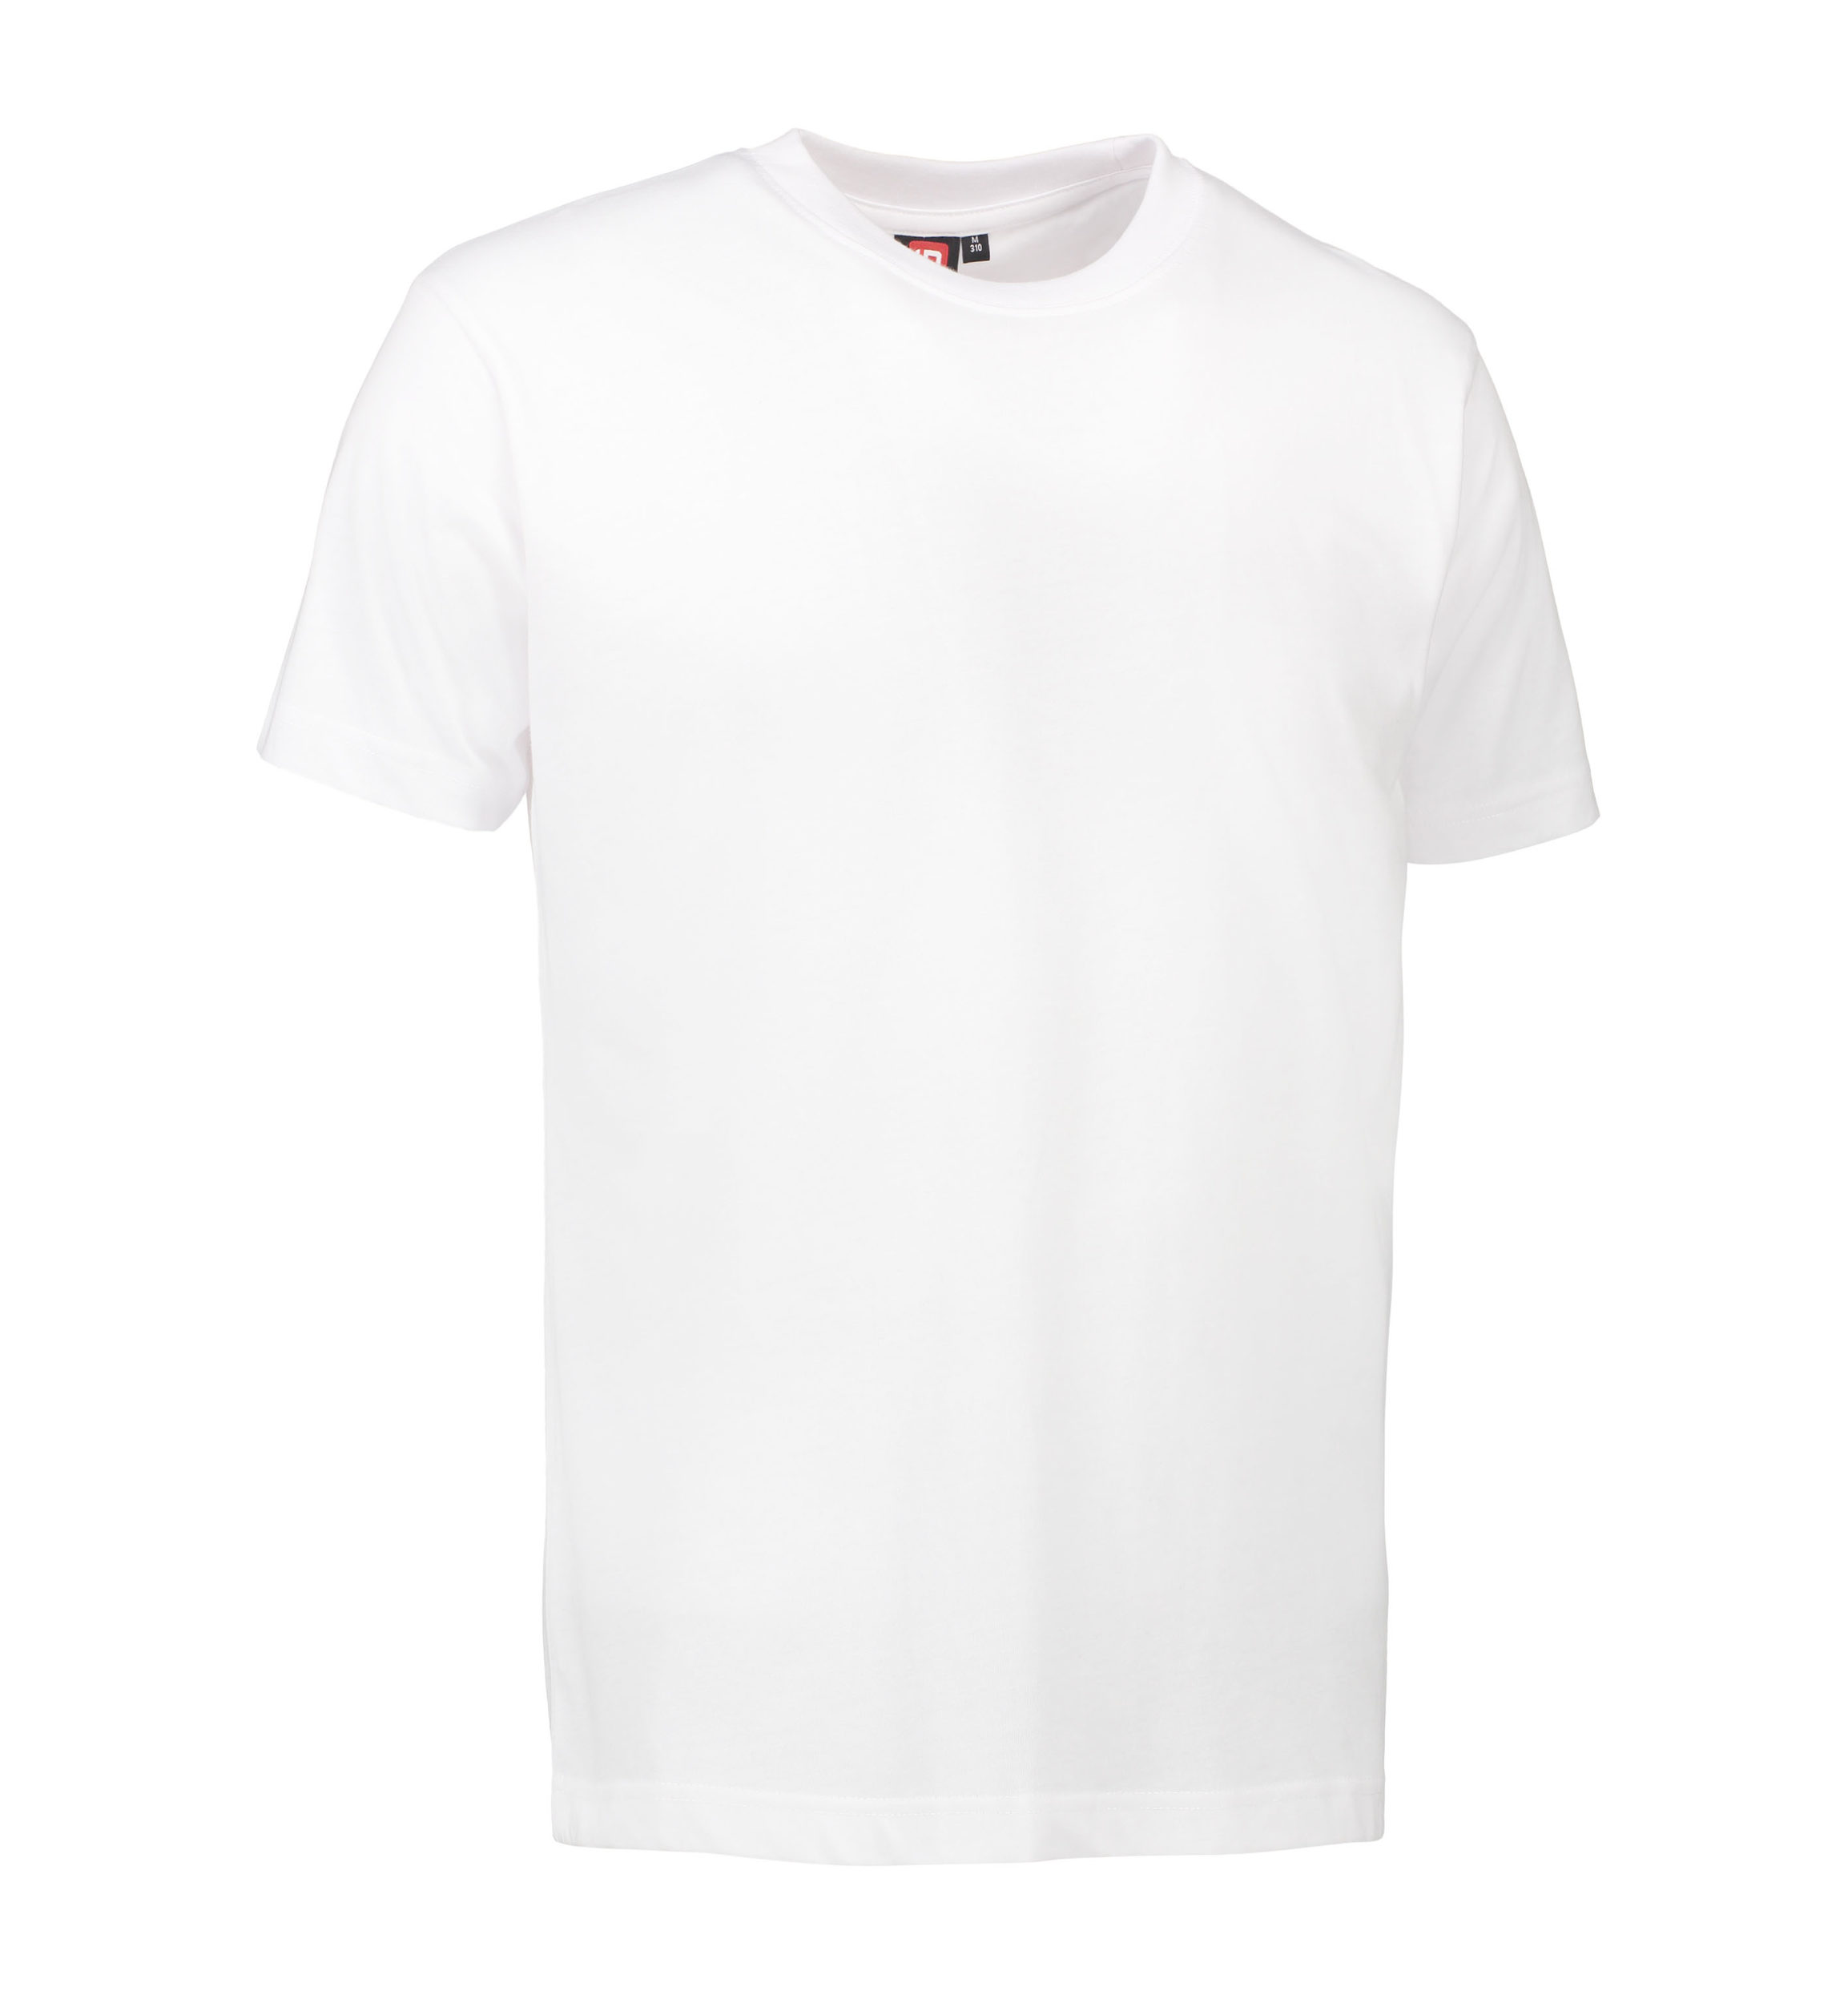 Se Slidstærk t-shirt i hvid til mænd - XL hos Sygeplejebutikken.dk